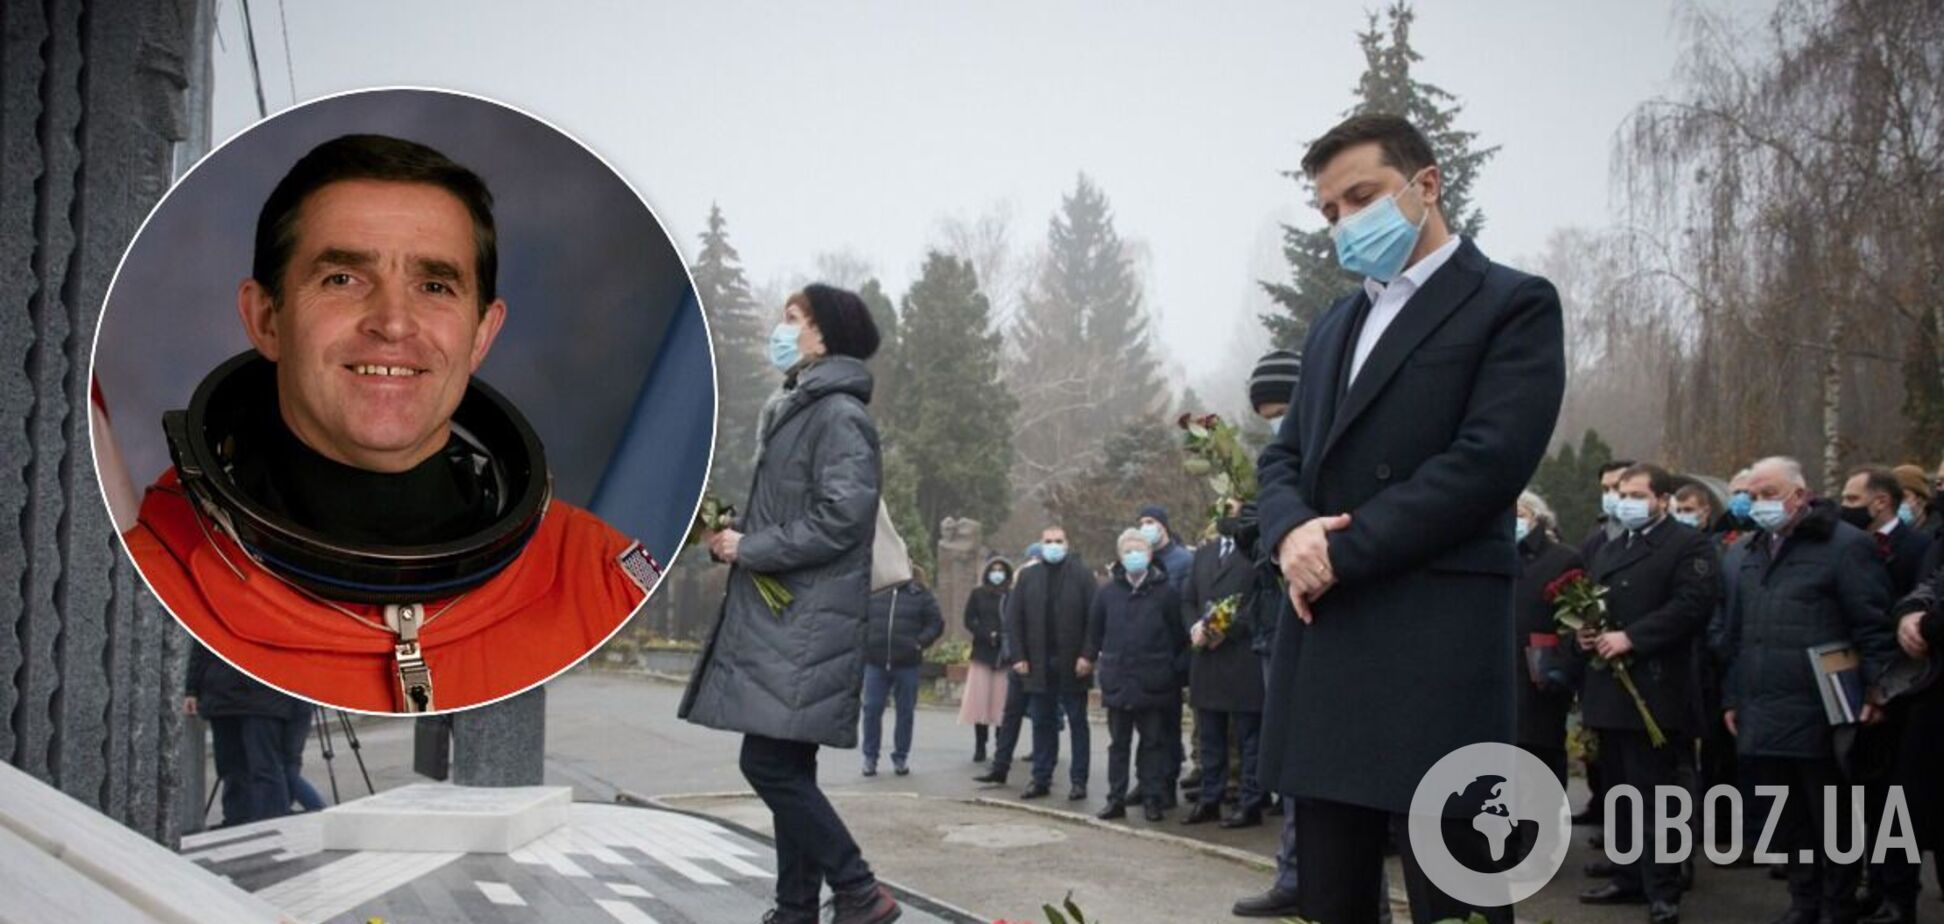 Зеленский открыл памятник первому космонавту Украины. Фото с церемонии